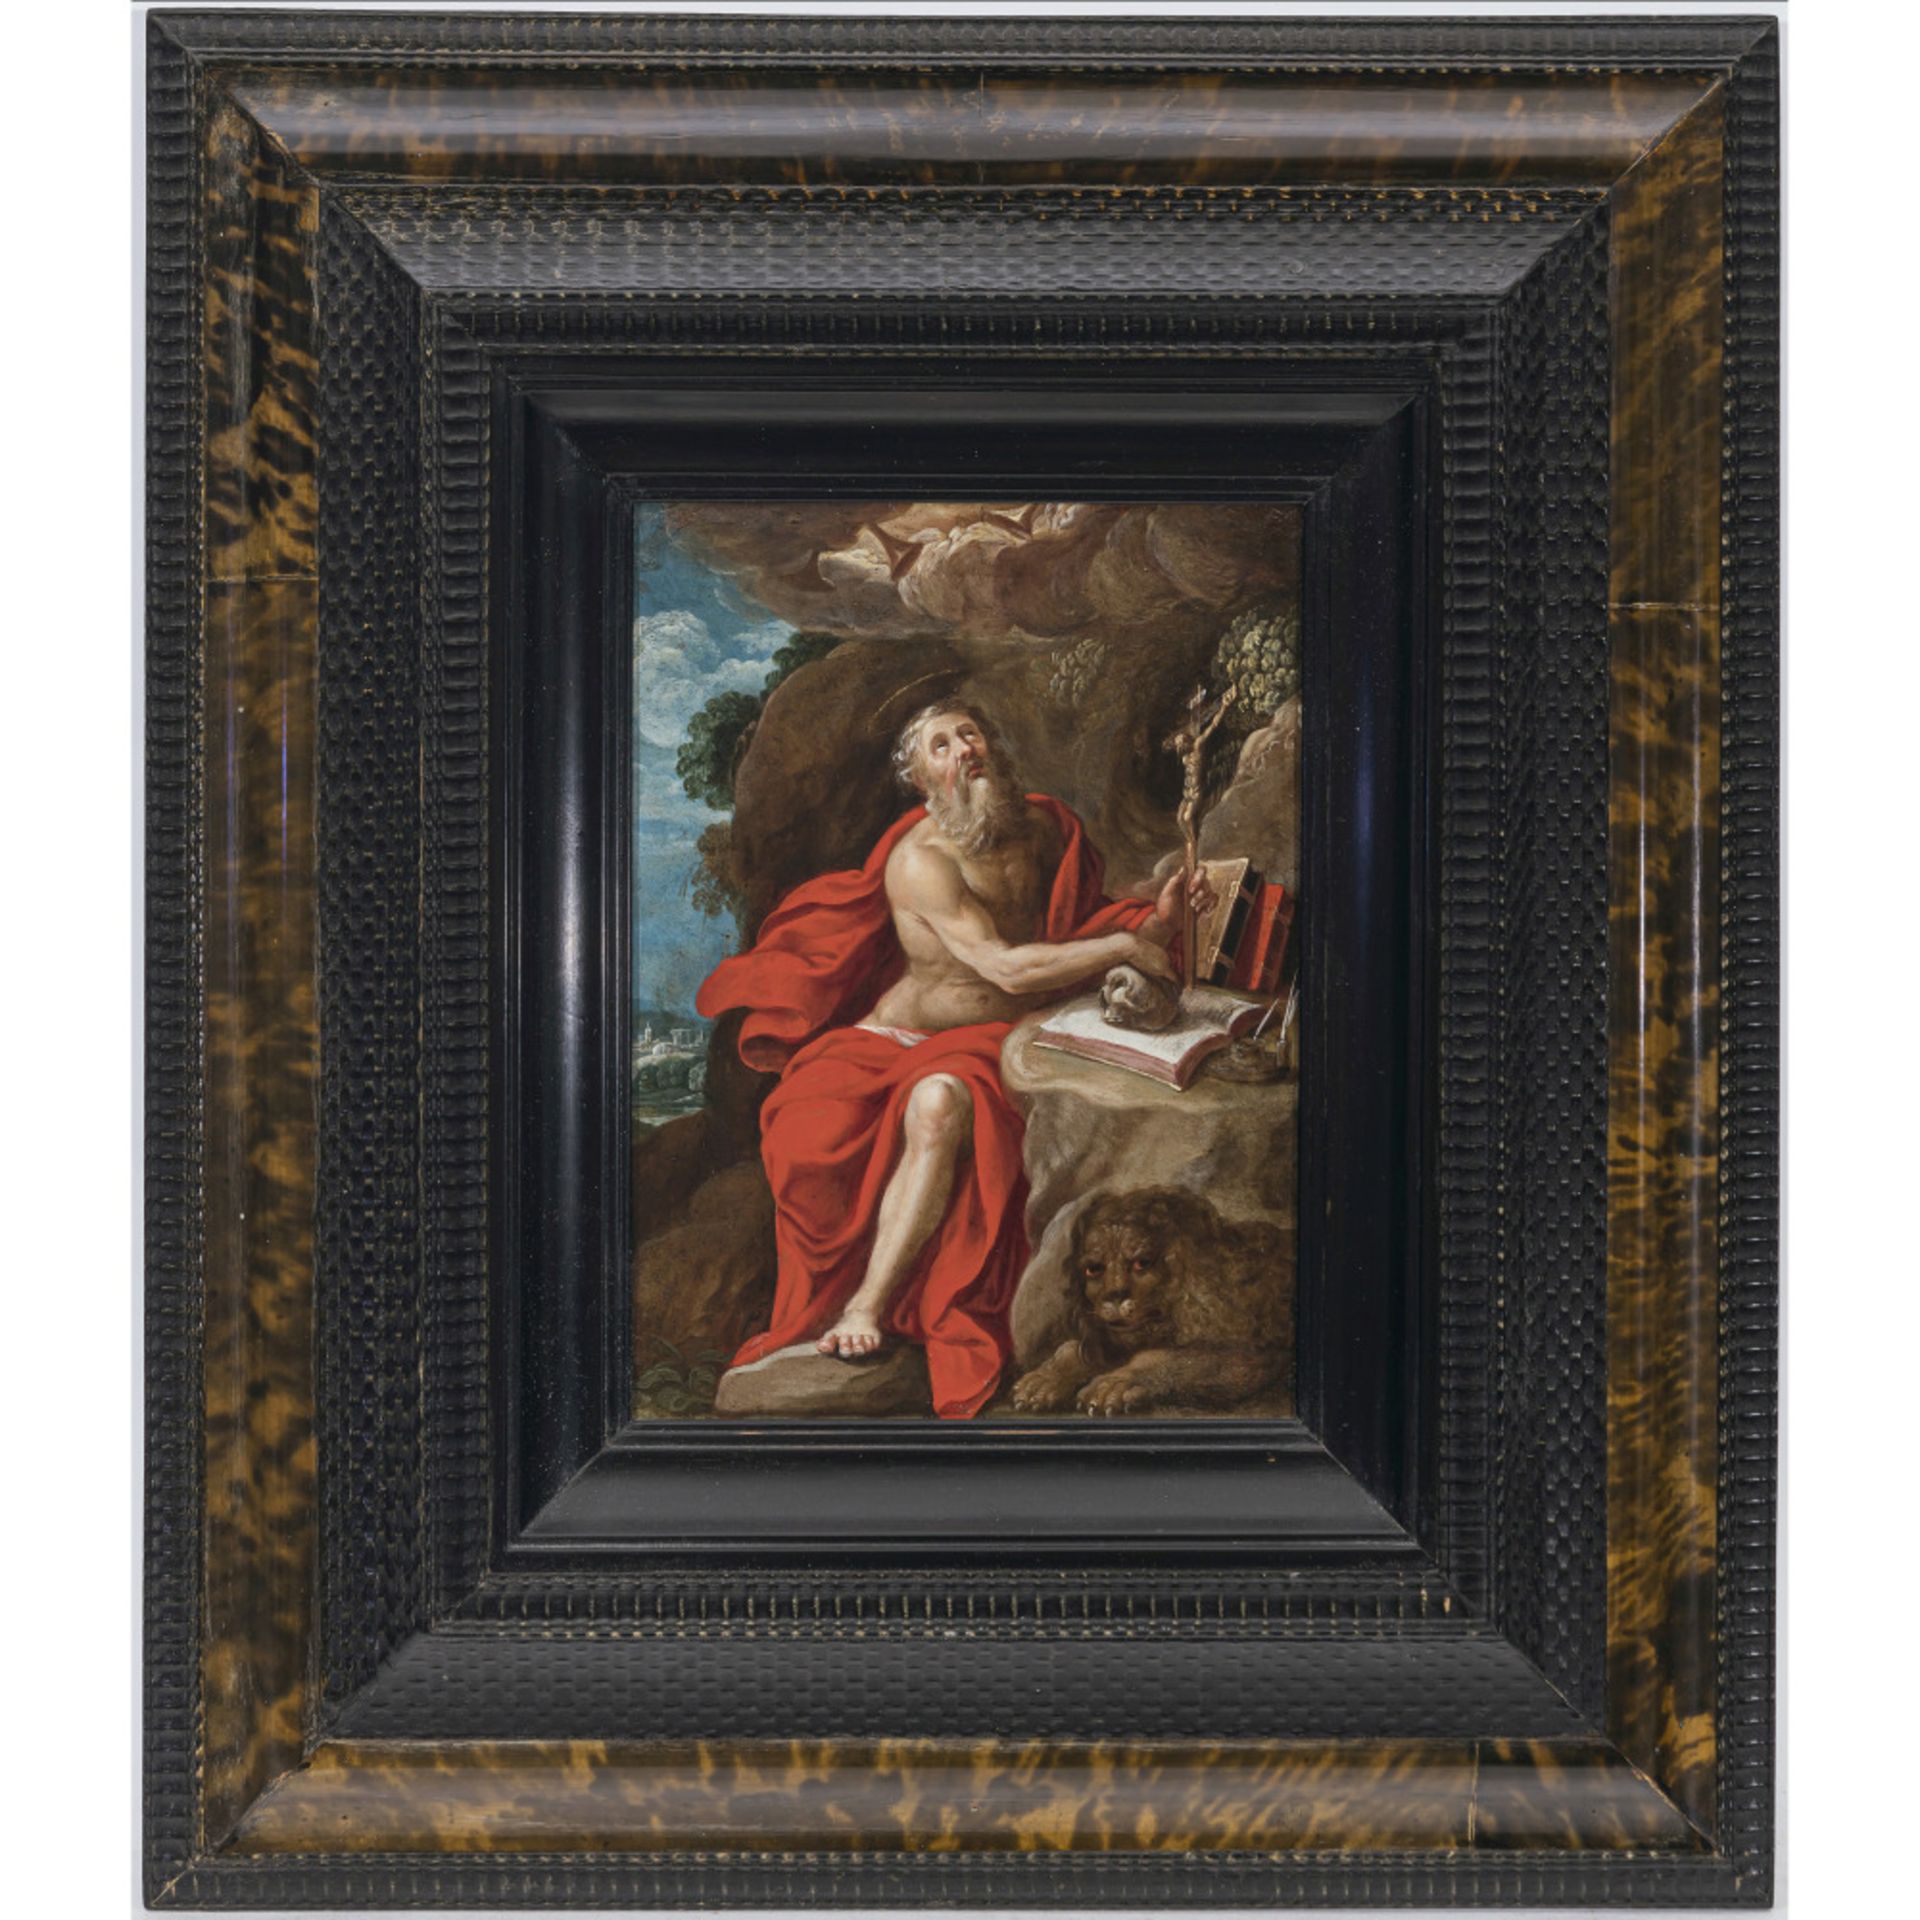 Italien (?) 17th century - Saint Jerome - Image 2 of 2